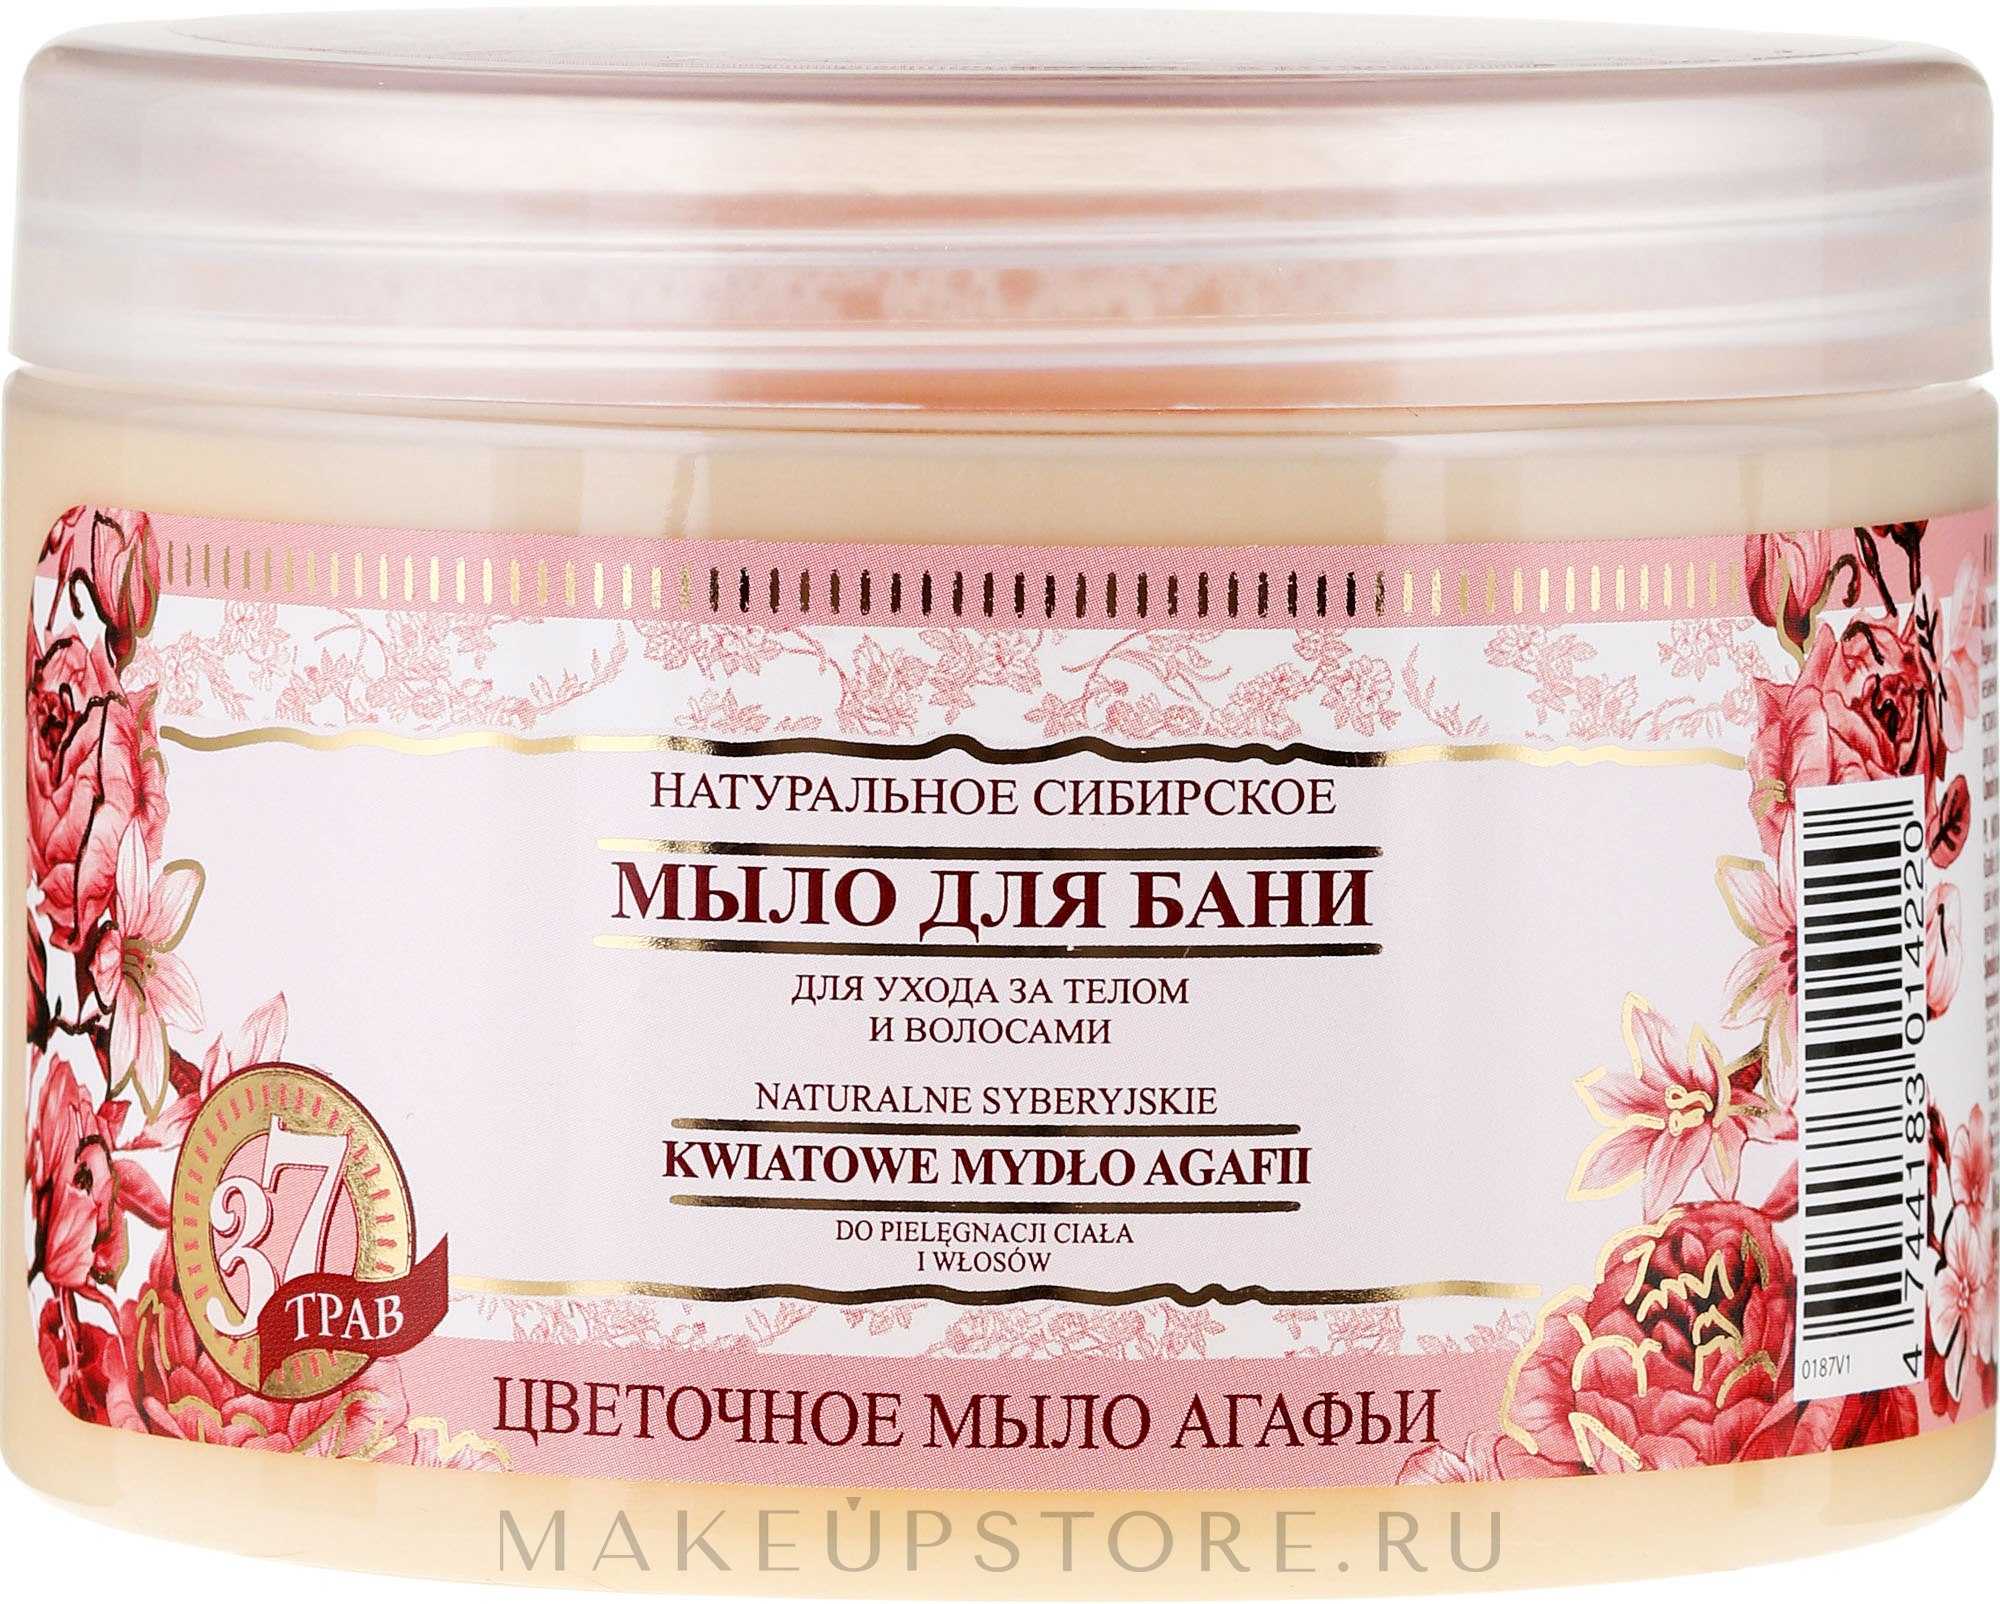 Натуральное сибирское мыло: черное, белое и цветочное от рецепты бабушки агафьи